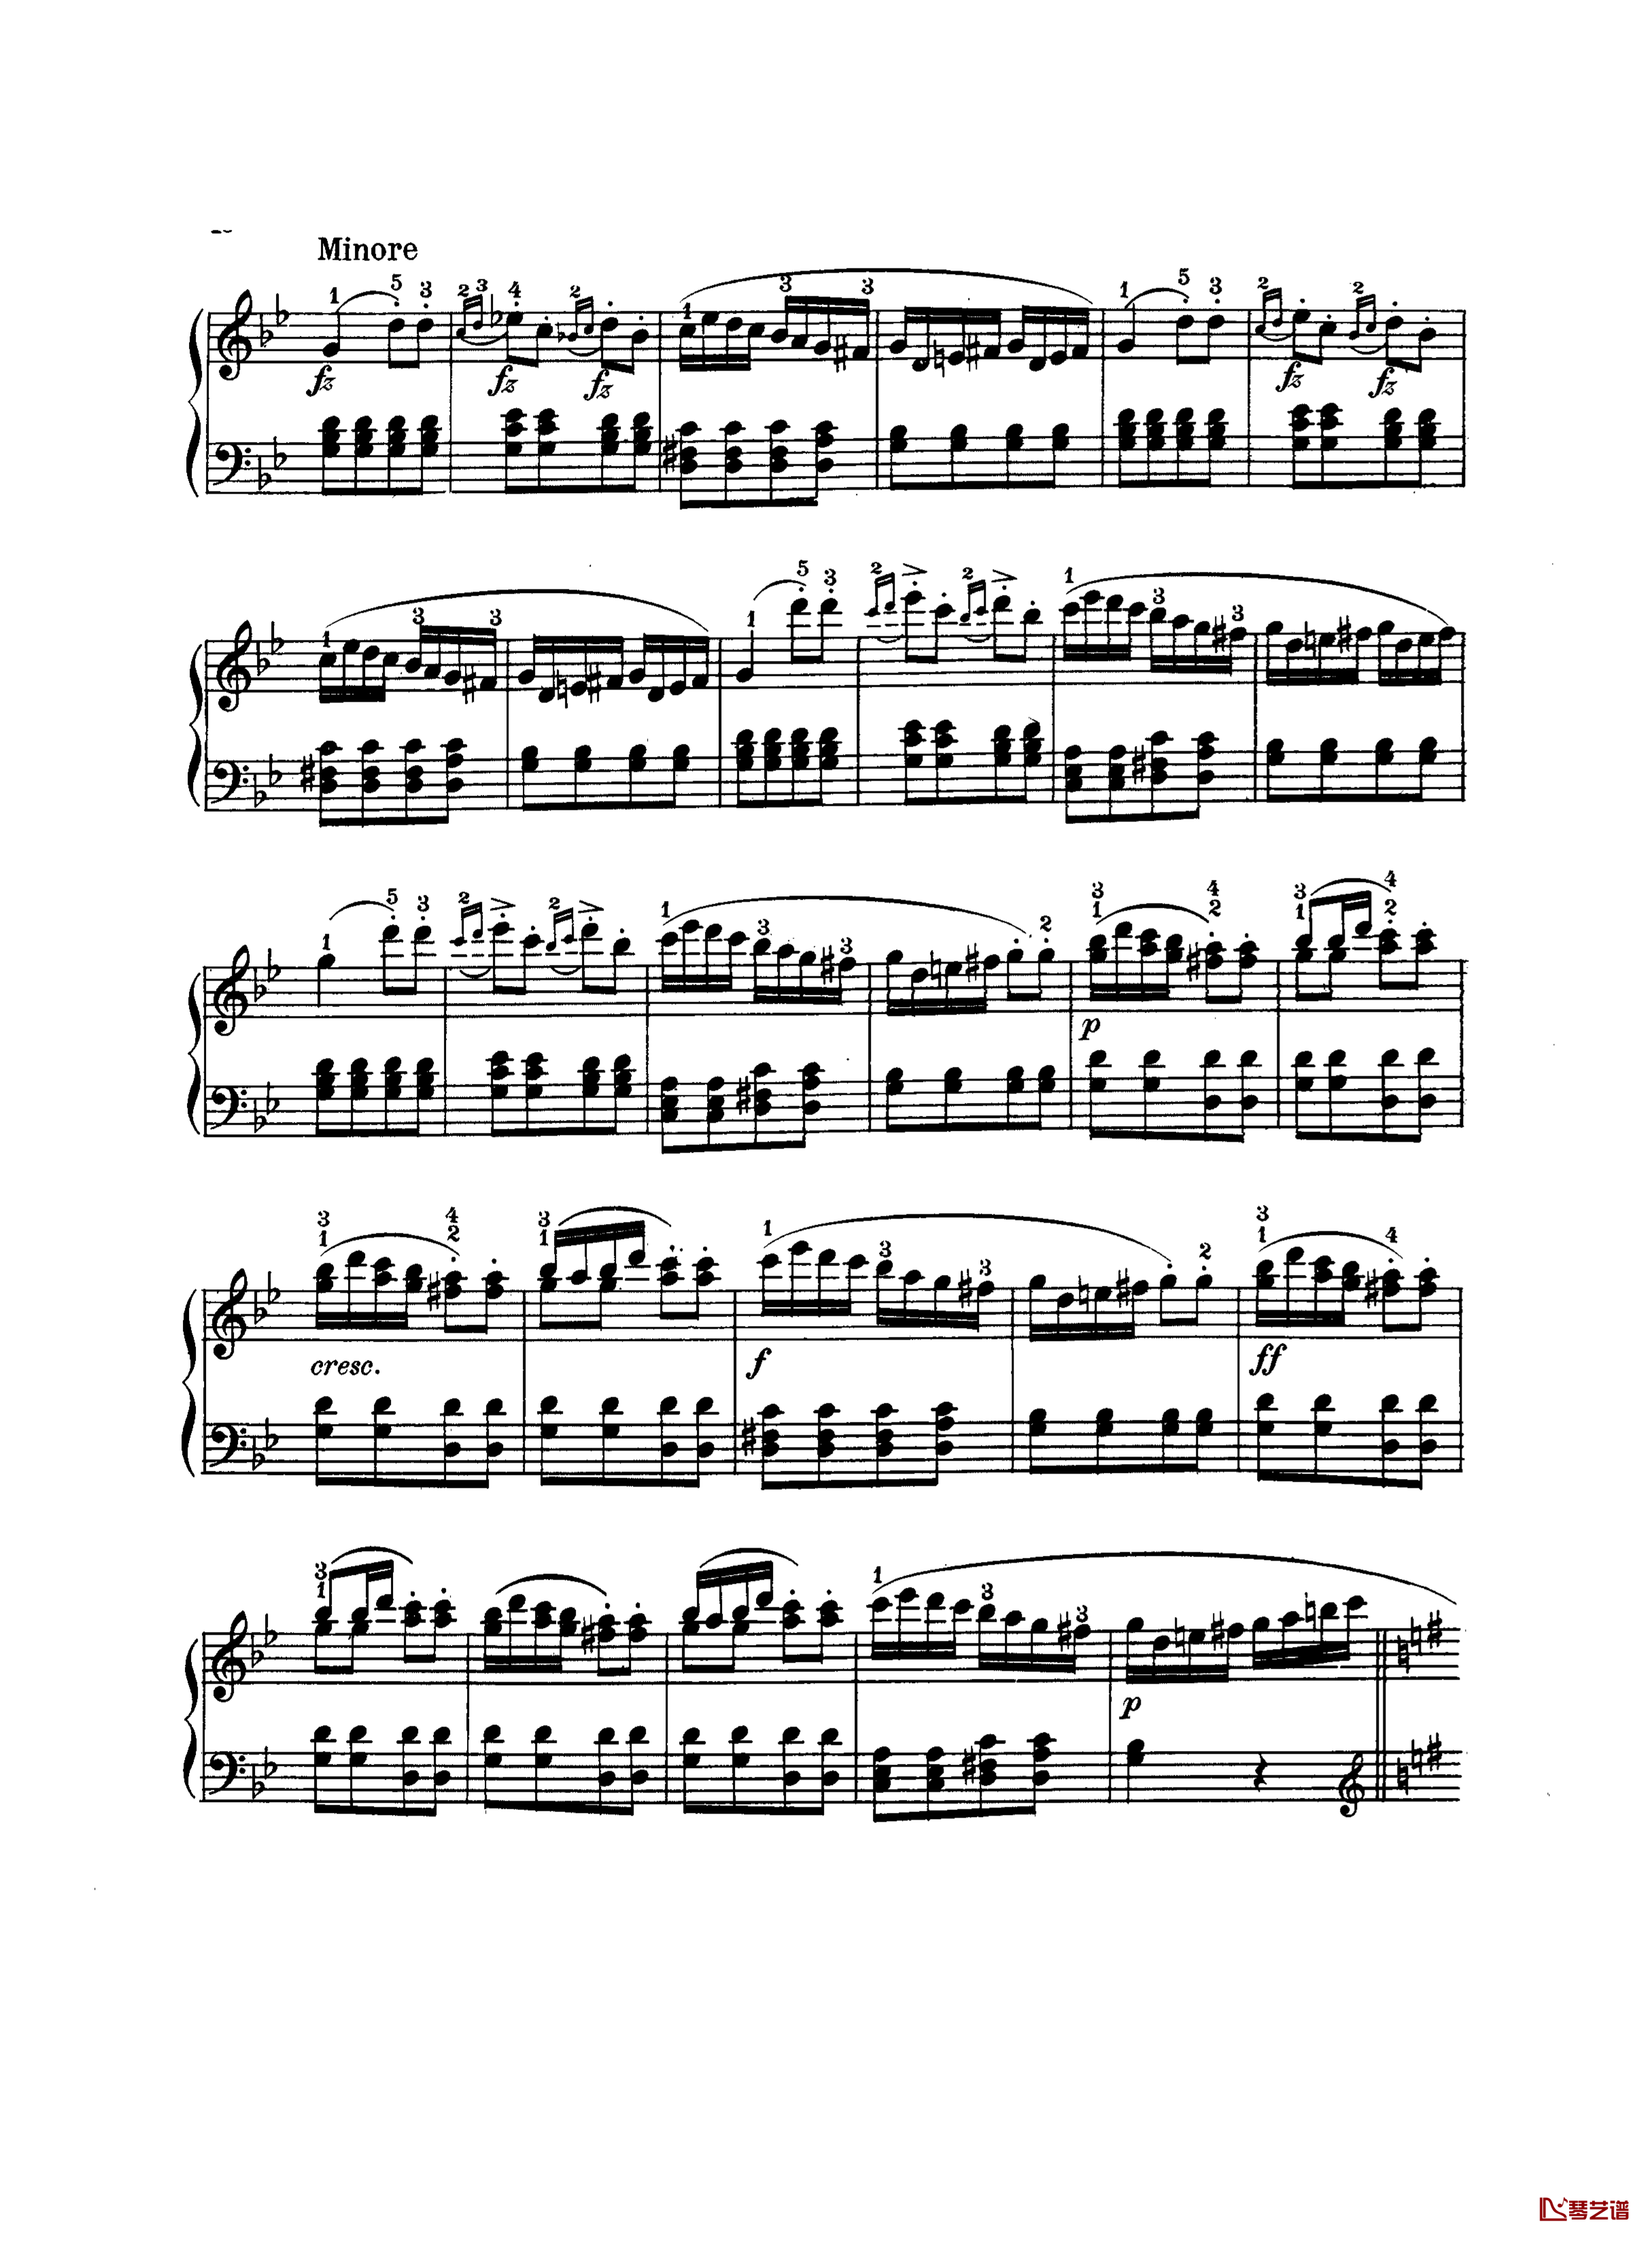 吉普赛回旋曲钢琴谱-带指法版-海顿3